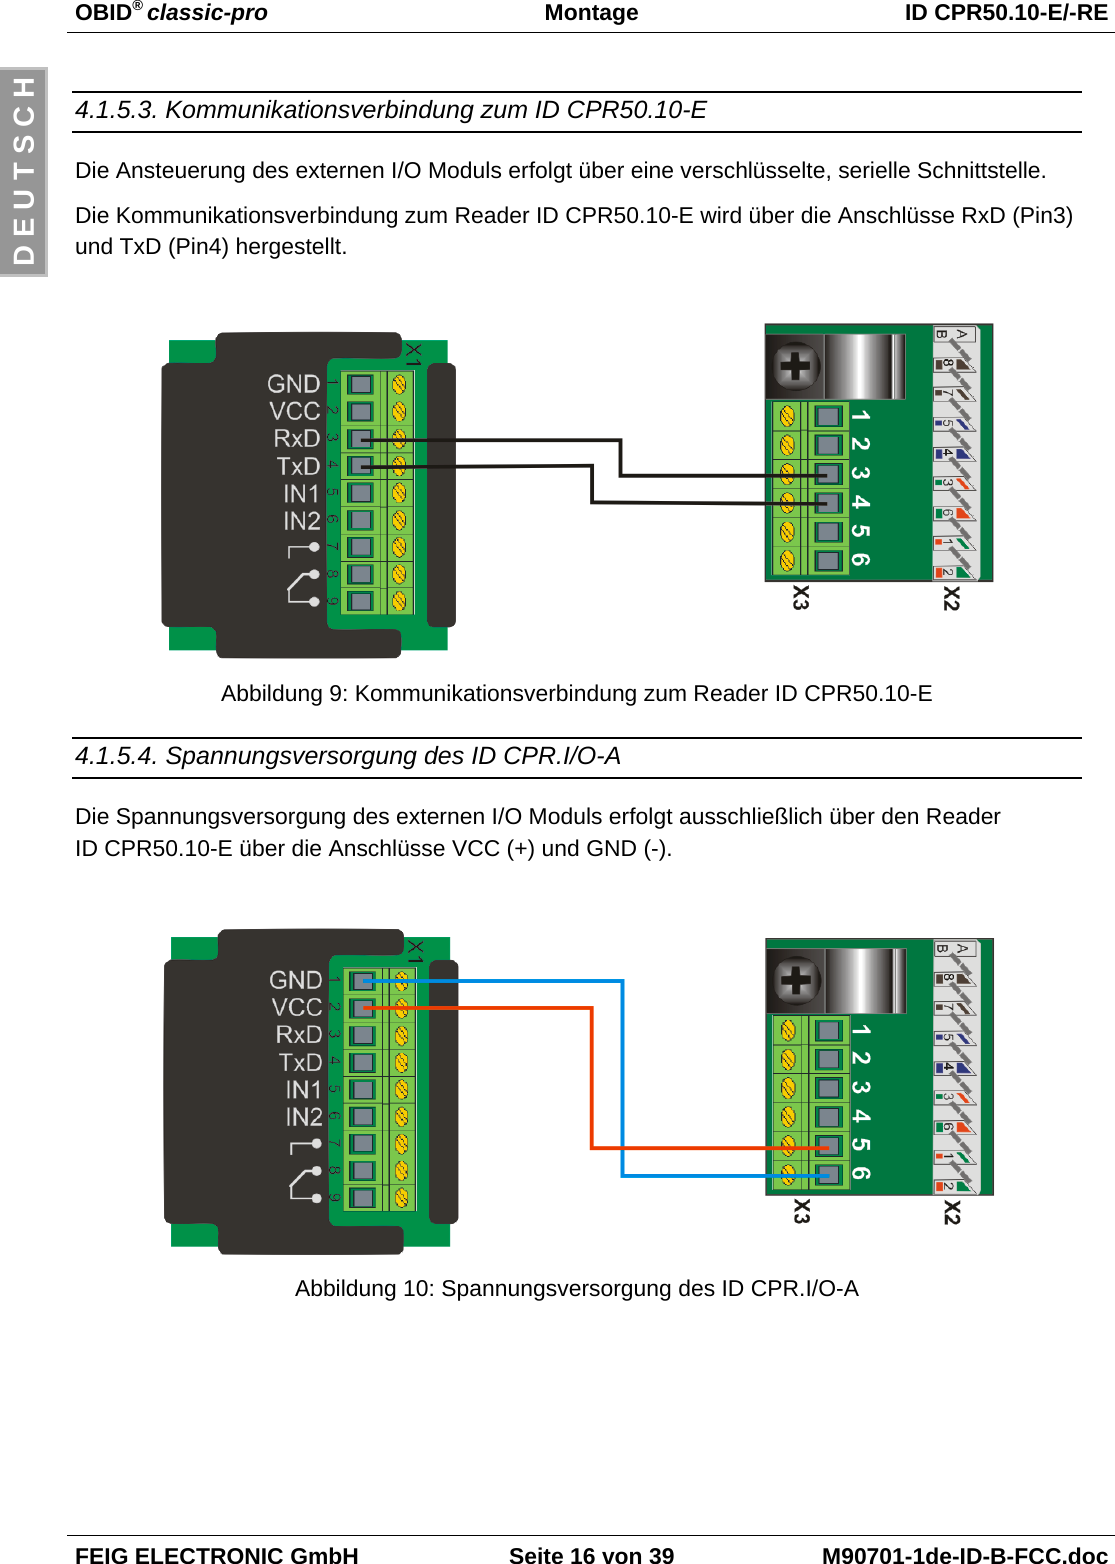 OBID® classic-pro Montage ID CPR50.10-E/-REFEIG ELECTRONIC GmbH Seite 16 von 39 M90701-1de-ID-B-FCC.docD E U T S C H4.1.5.3. Kommunikationsverbindung zum ID CPR50.10-EDie Ansteuerung des externen I/O Moduls erfolgt über eine verschlüsselte, serielle Schnittstelle.Die Kommunikationsverbindung zum Reader ID CPR50.10-E wird über die Anschlüsse RxD (Pin3)und TxD (Pin4) hergestellt.Abbildung 9: Kommunikationsverbindung zum Reader ID CPR50.10-E4.1.5.4. Spannungsversorgung des ID CPR.I/O-ADie Spannungsversorgung des externen I/O Moduls erfolgt ausschließlich über den ReaderID CPR50.10-E über die Anschlüsse VCC (+) und GND (-).Abbildung 10: Spannungsversorgung des ID CPR.I/O-A